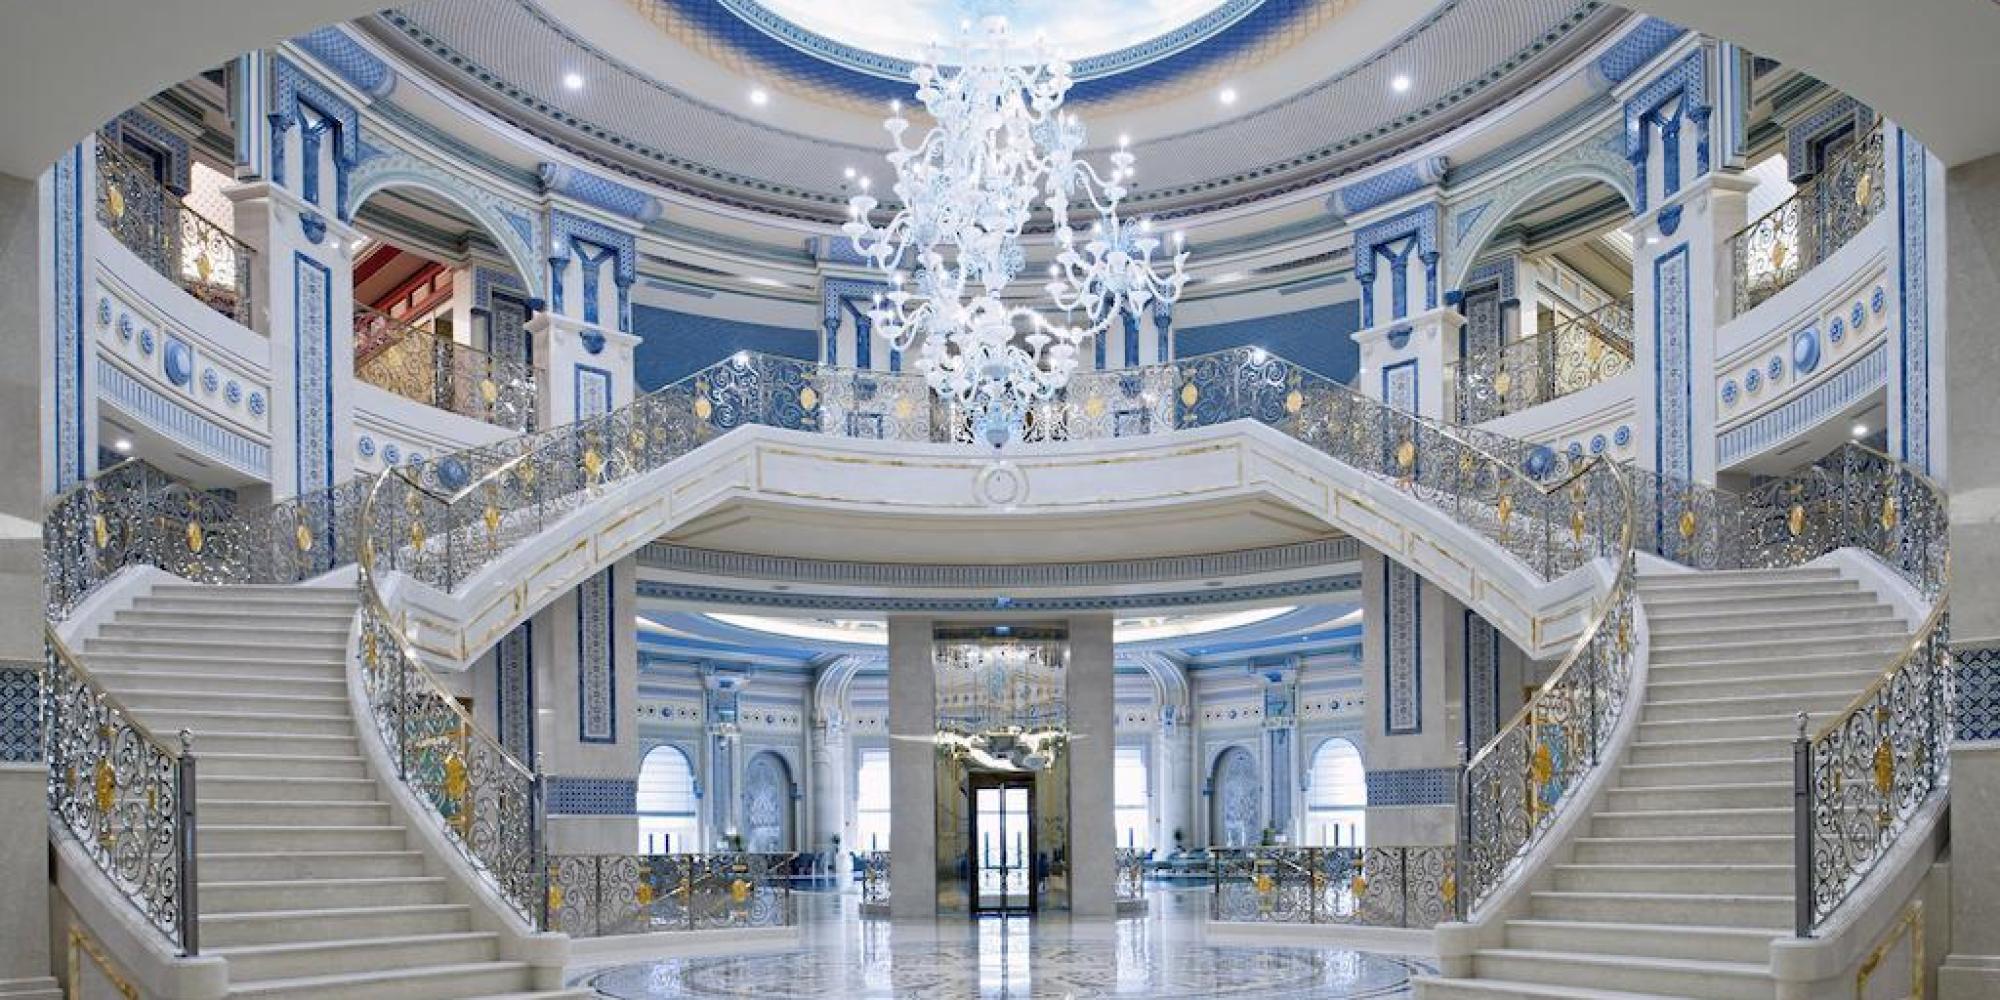 حقيقة تحول فندق 5 نجوم إلى سجن للأمراء السعوديين في الرياض.. أخلى جميع نزلائه قبل ساعات من حملة الاعتقالات